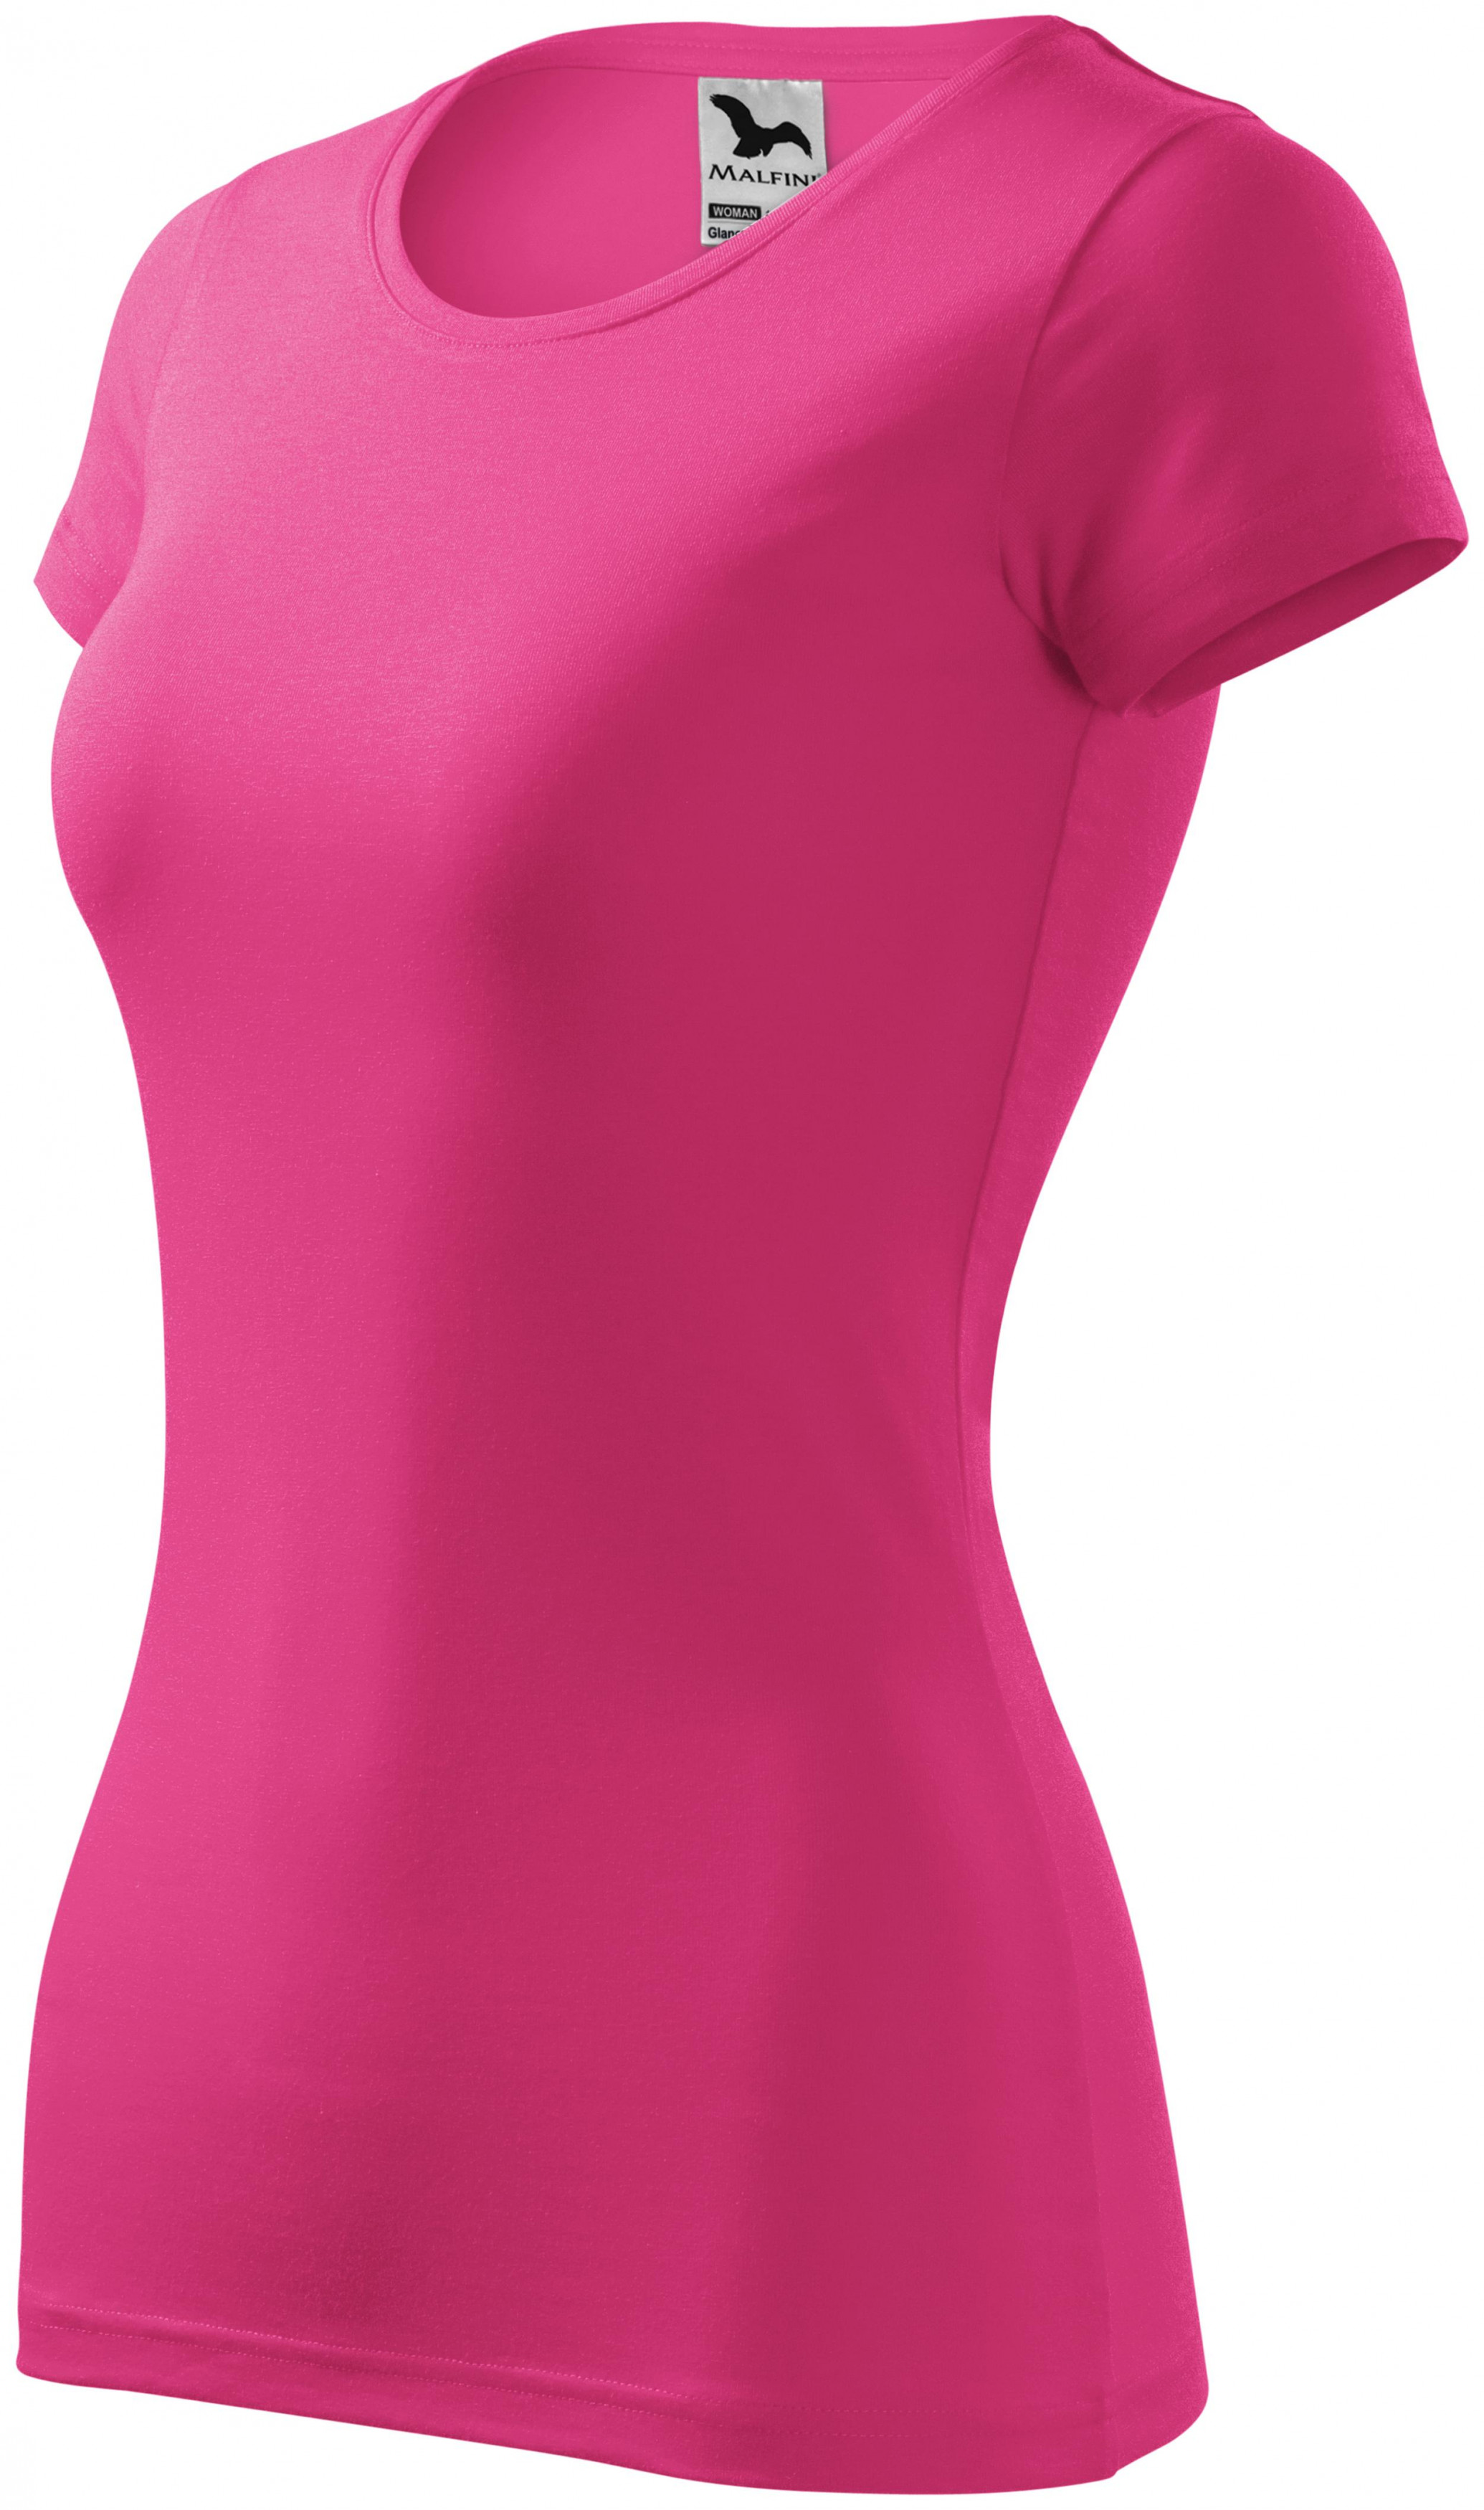 Dámske tričko zúžené, purpurová, XL